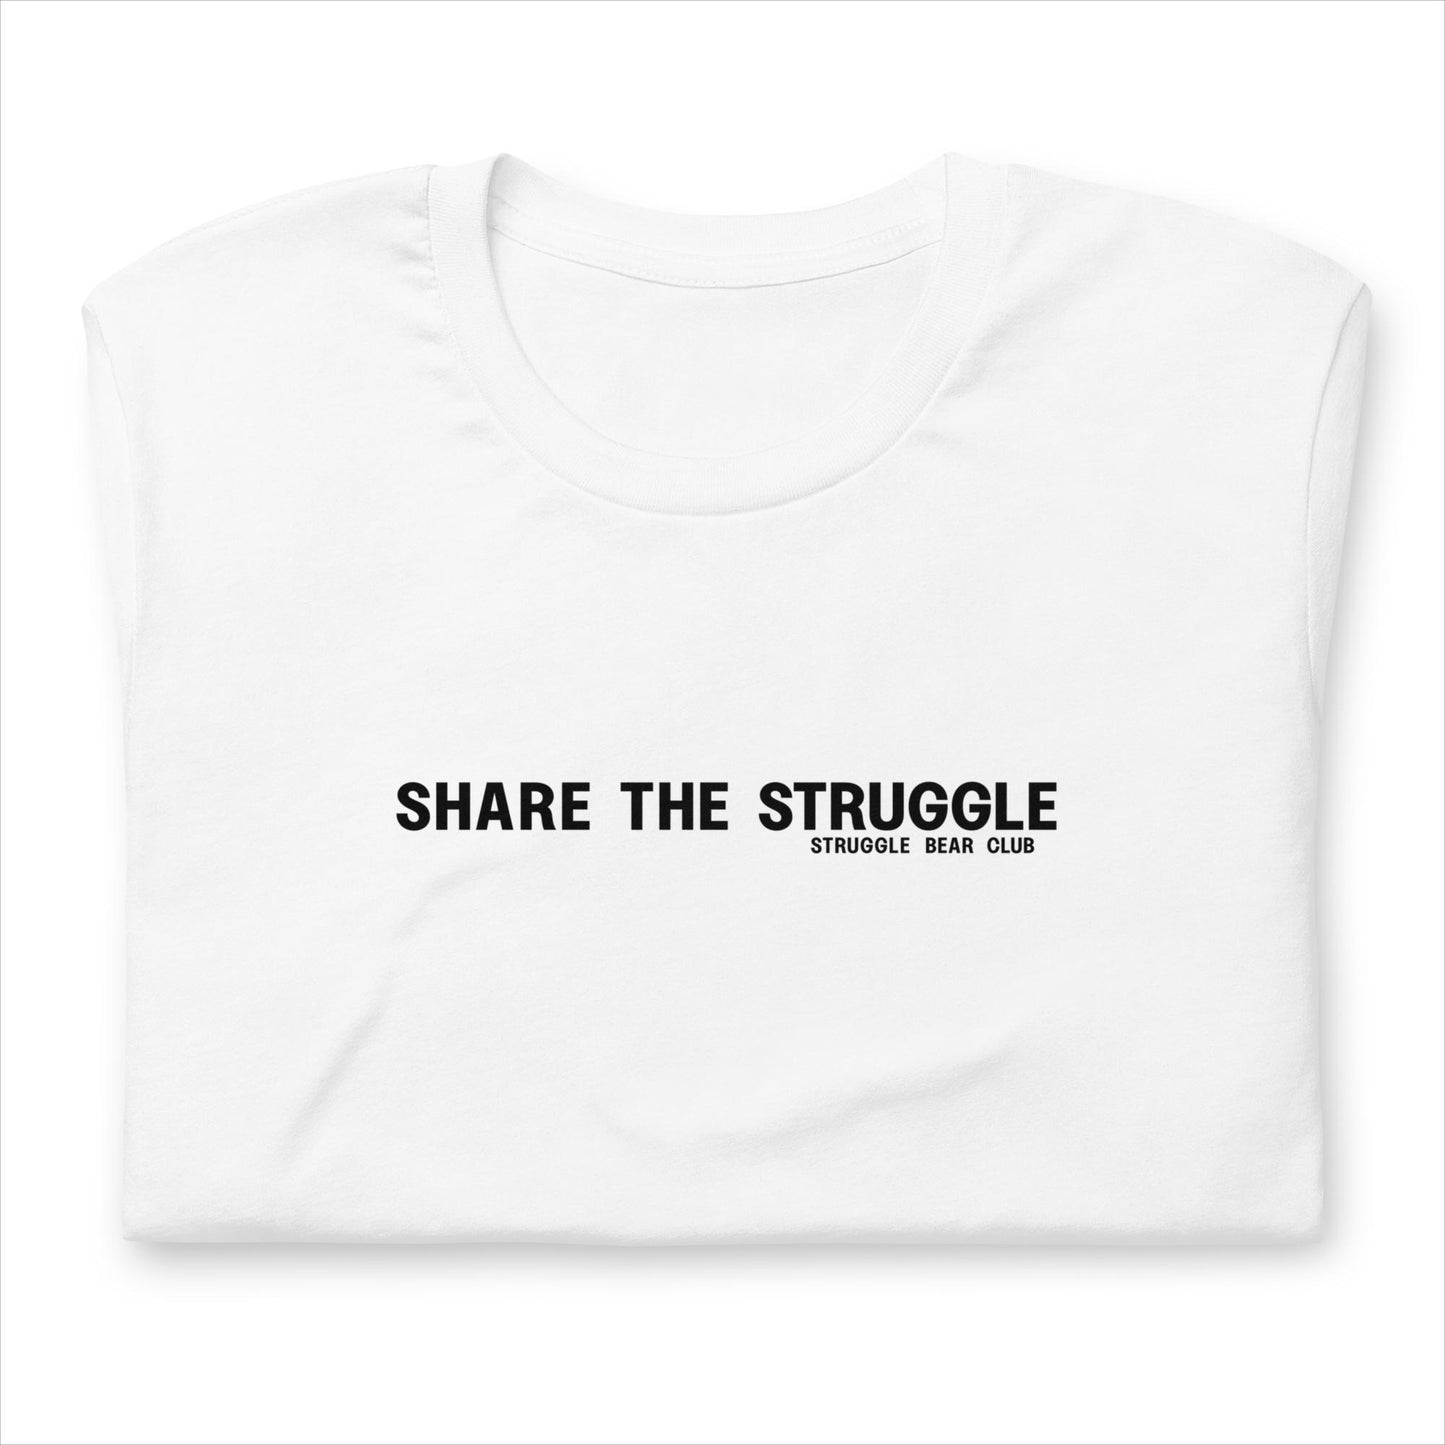 Share the Struggle - Unisex t-shirt